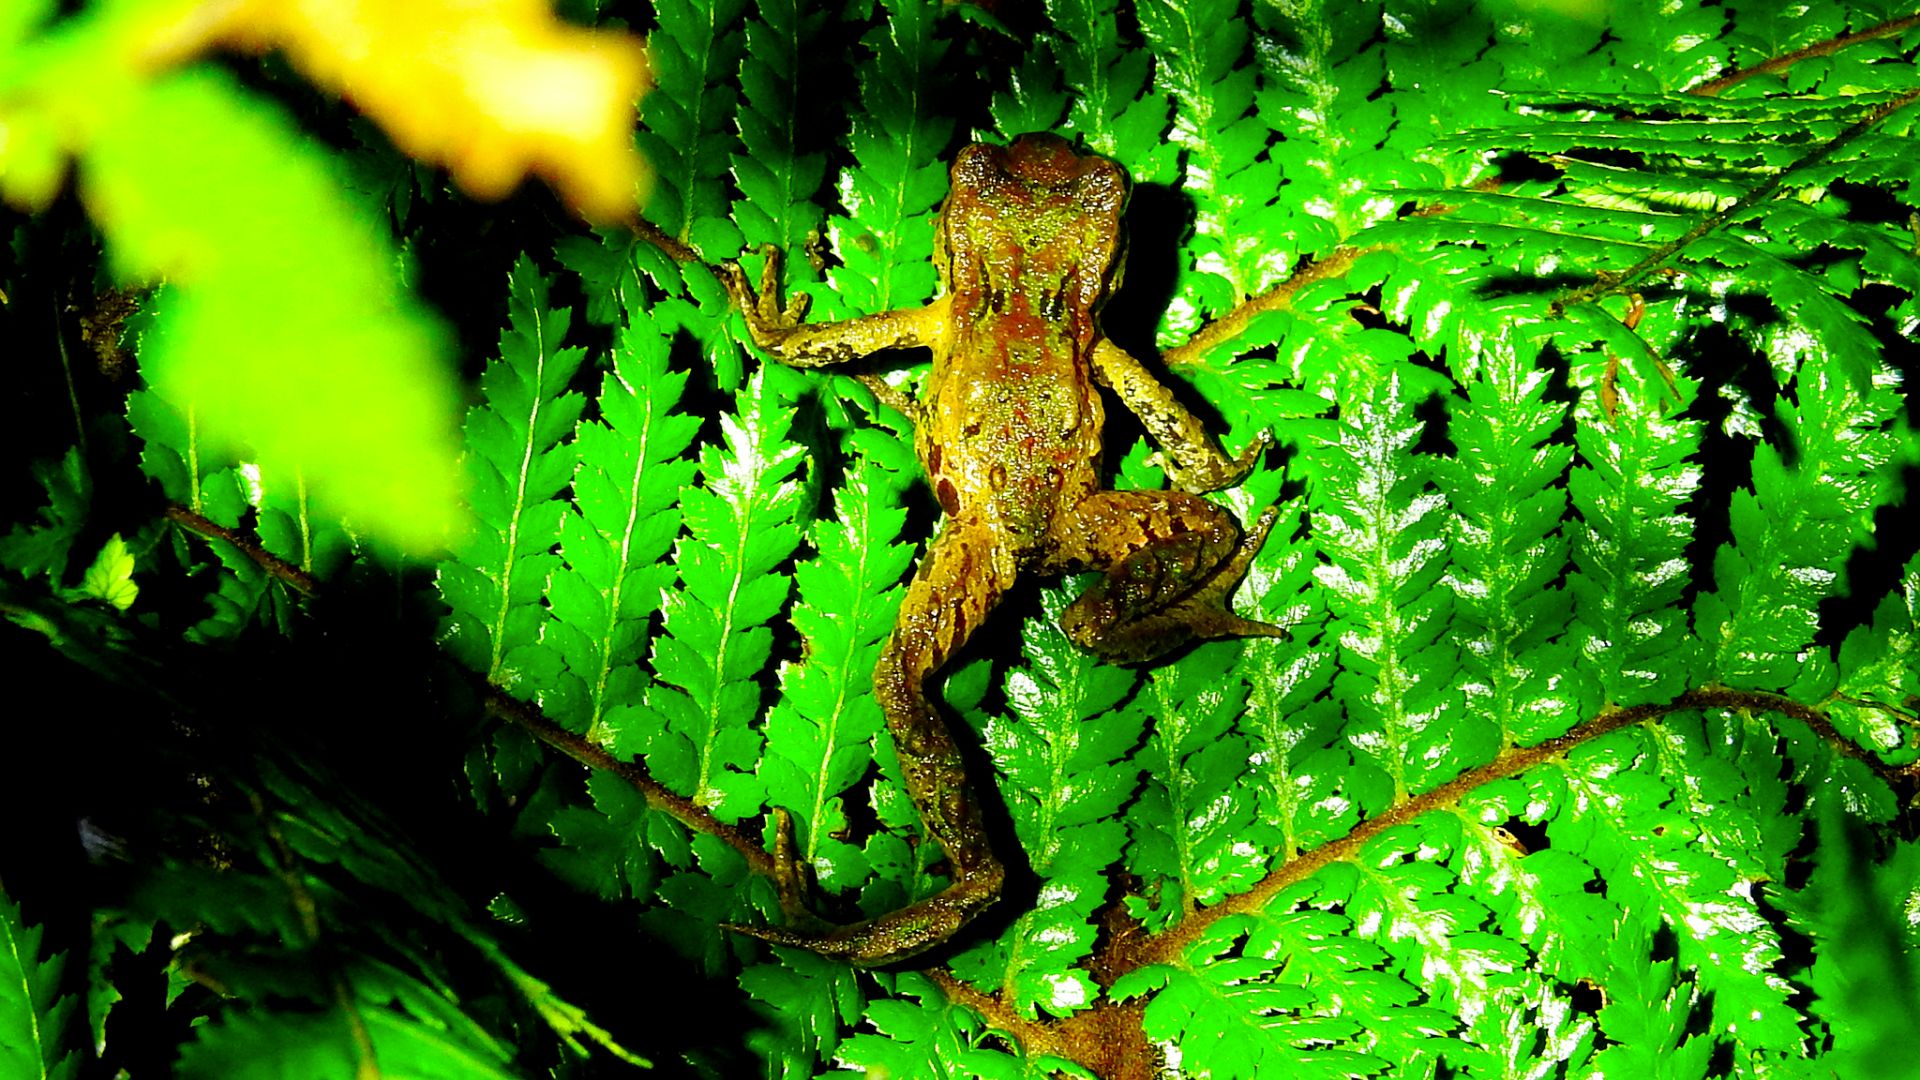 An archey's frog on a fern